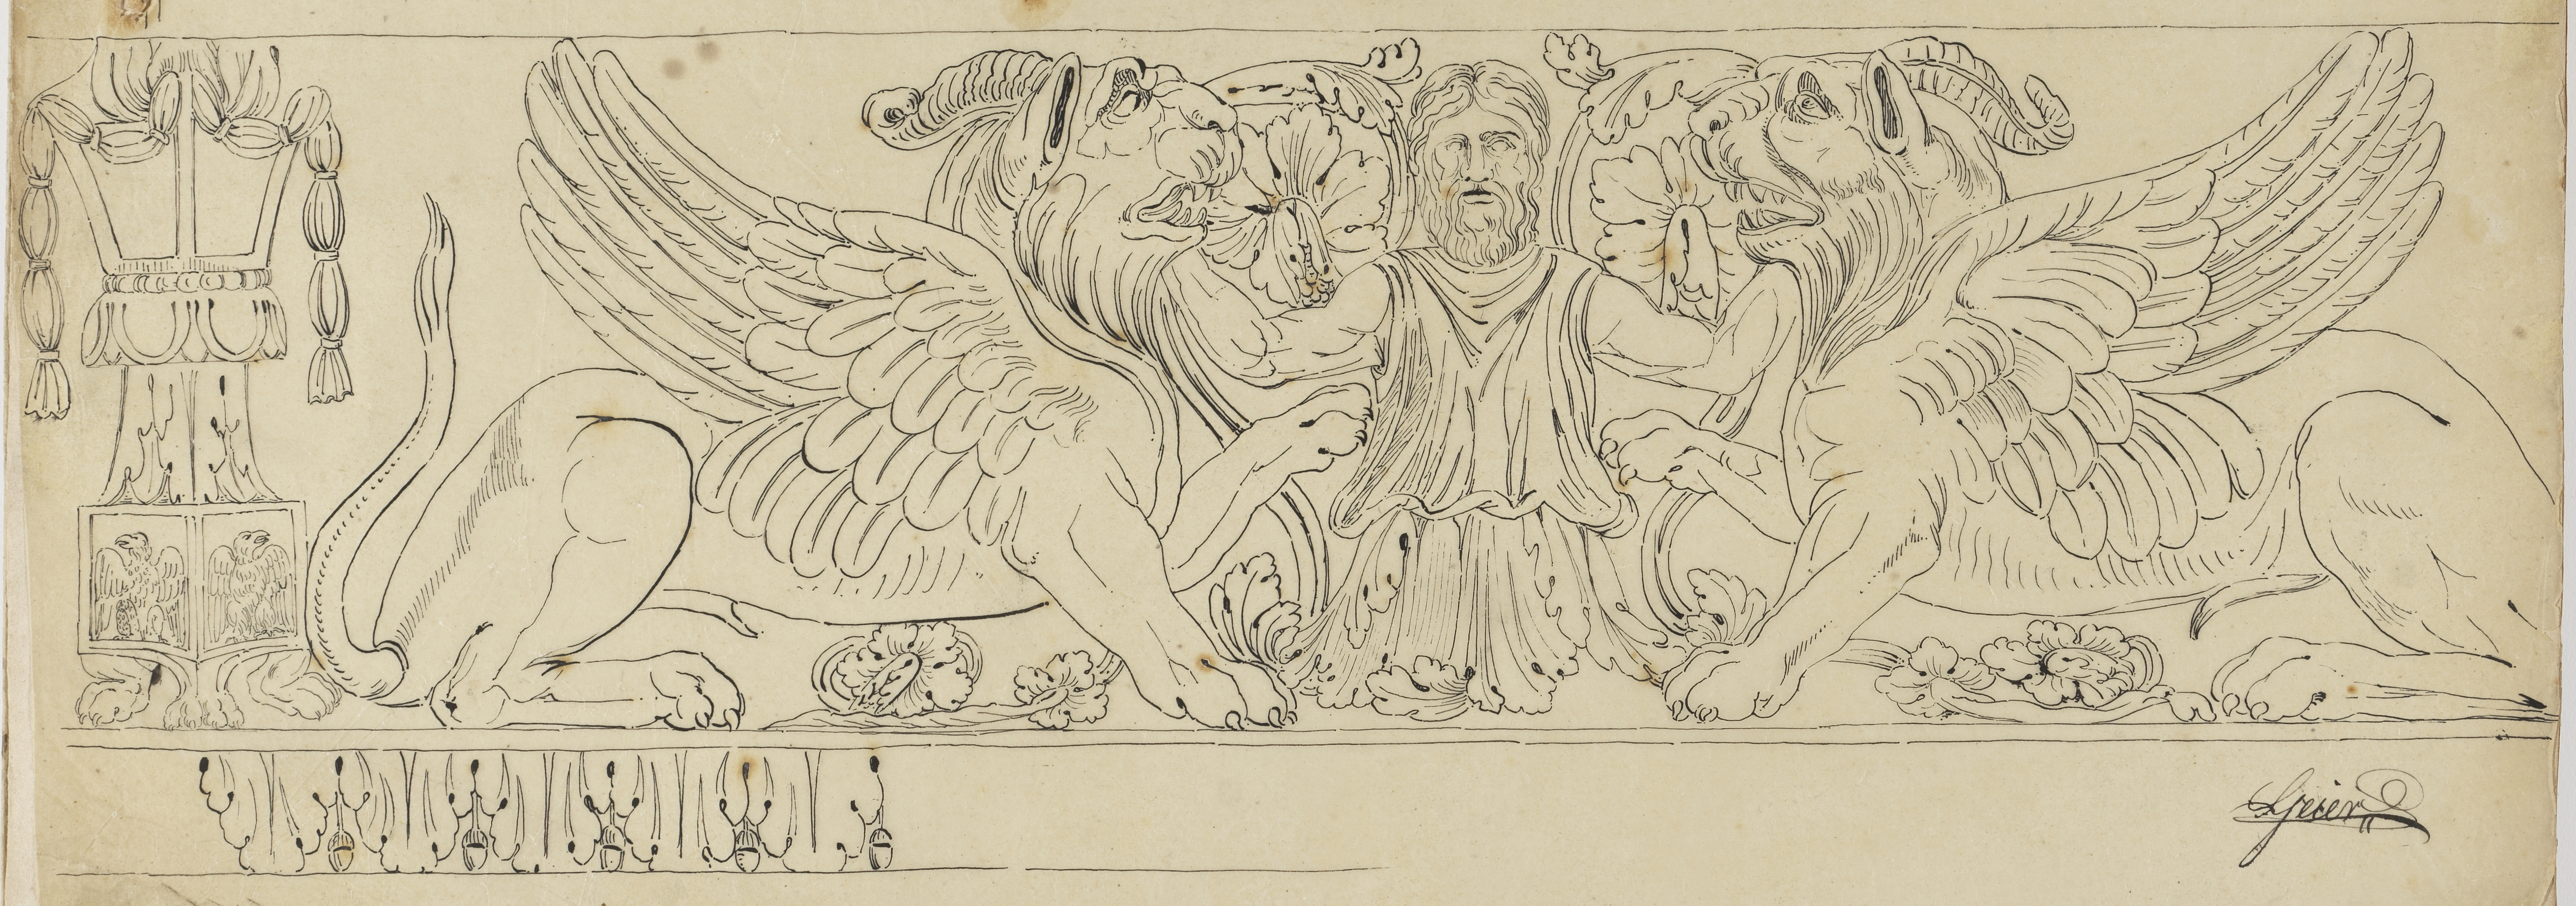 Piranesi-Zeichnung eines Fries mit Löwen.